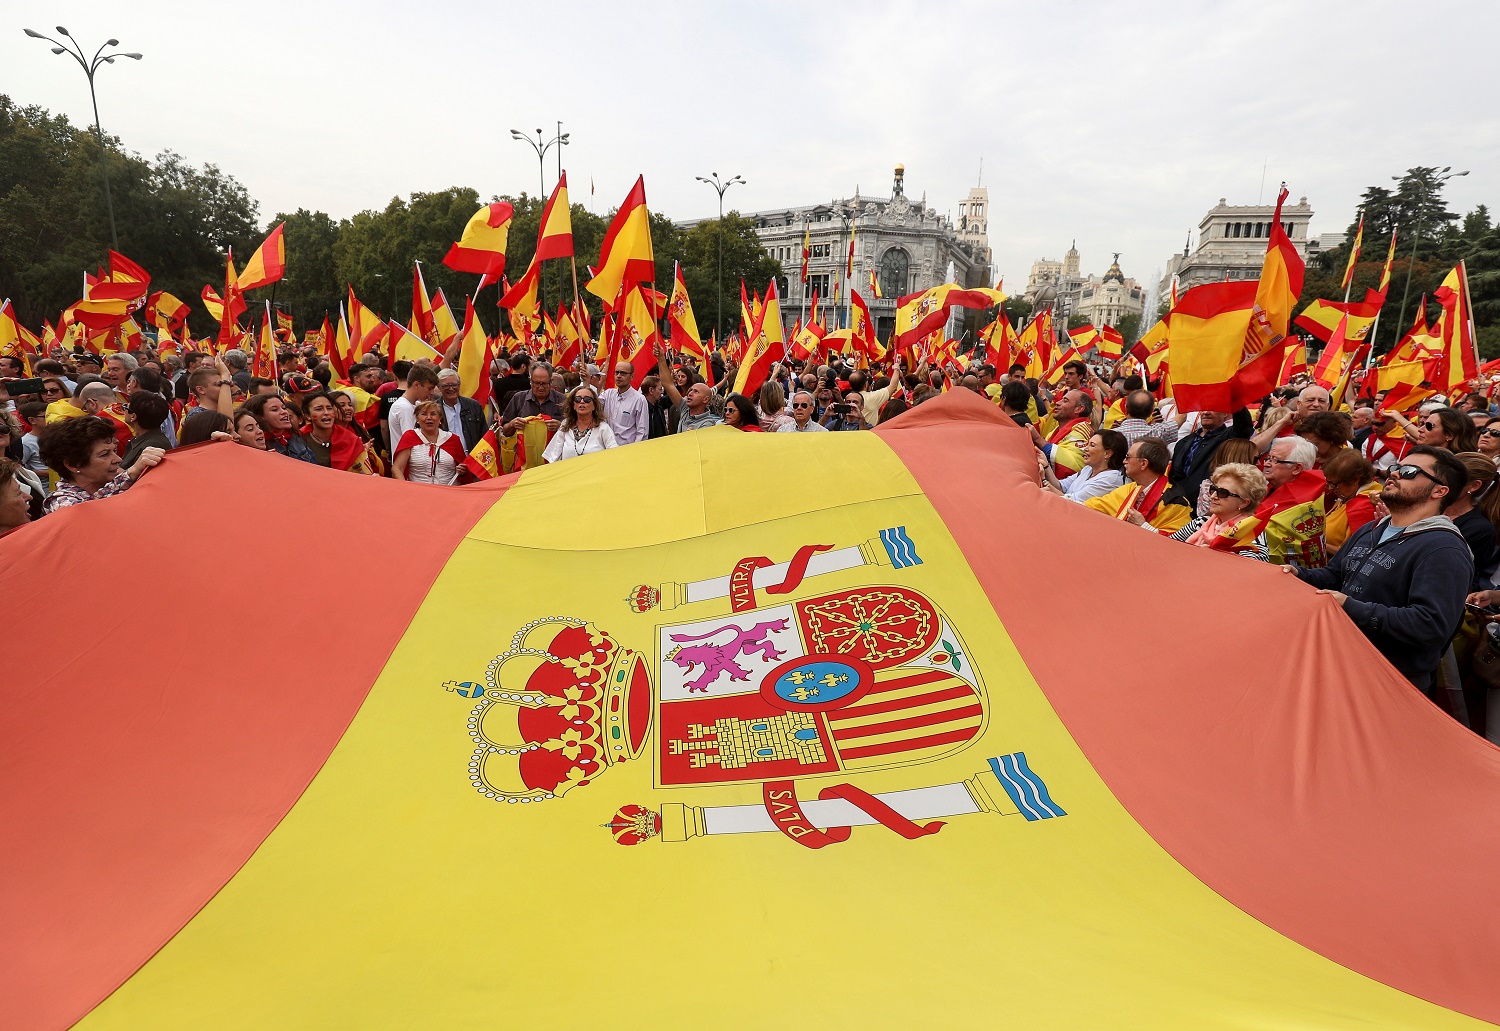 Claves para entender los acontecimientos antes del referendo en Cataluña